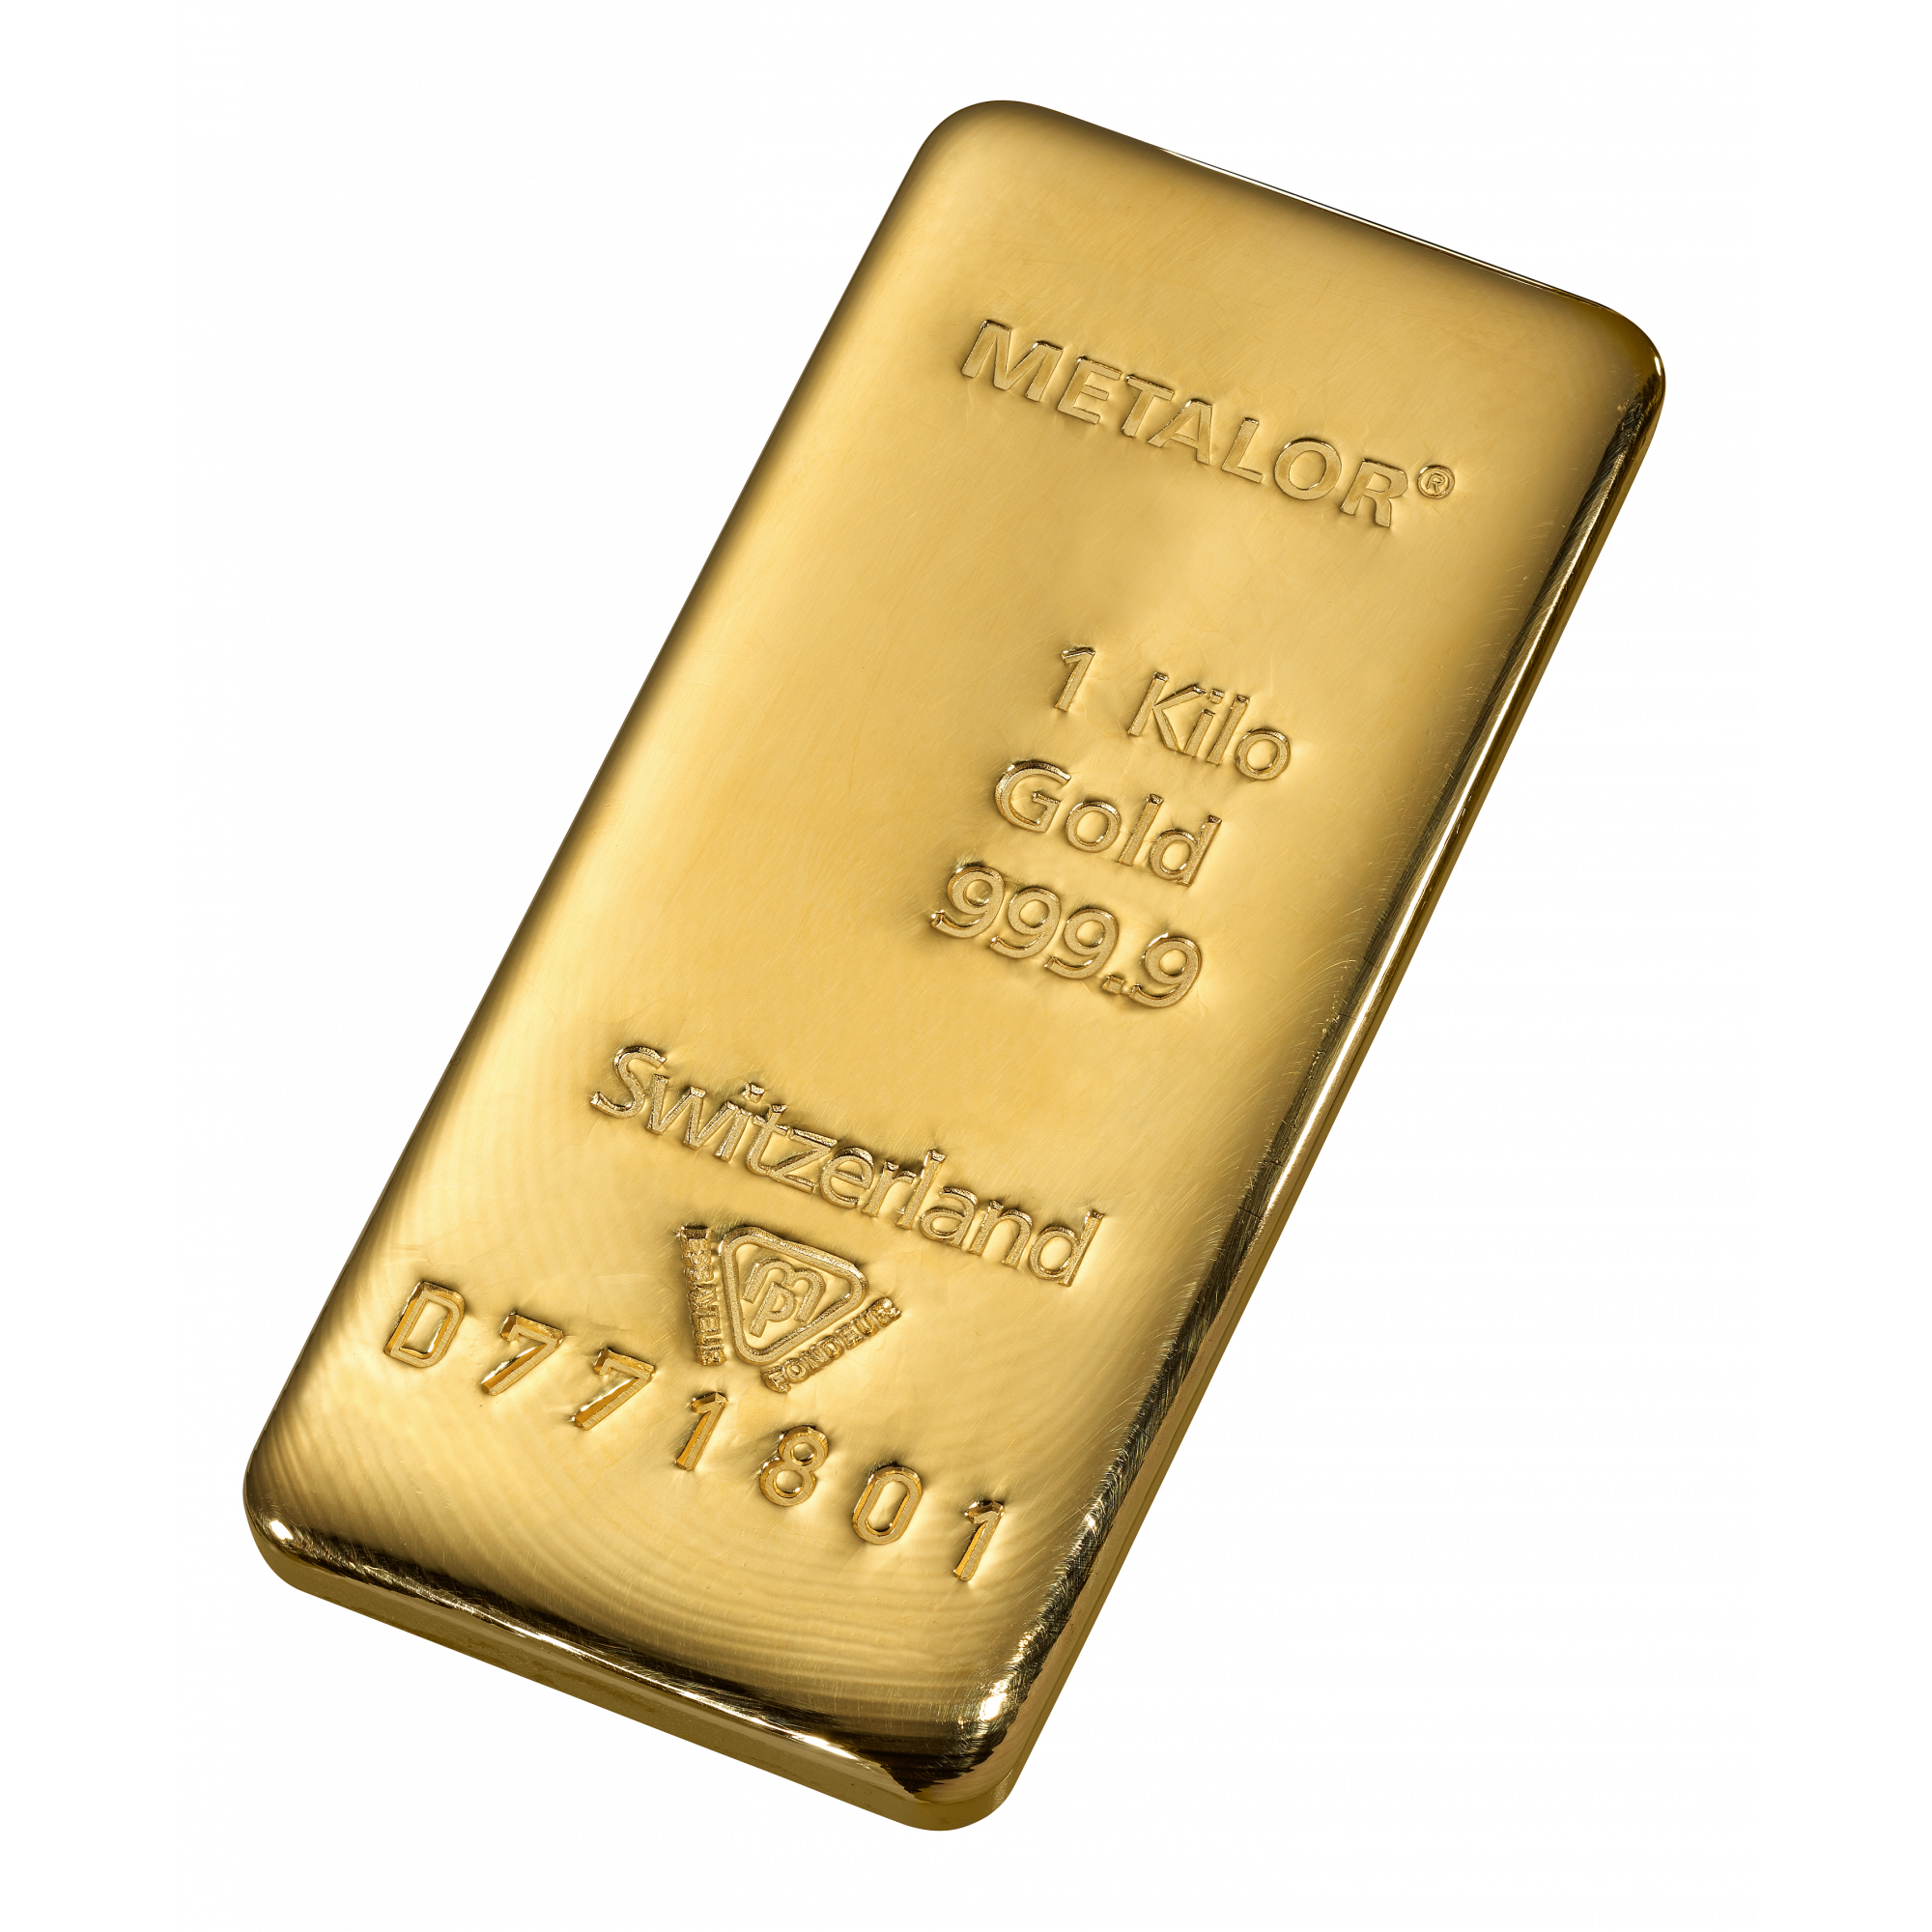 handtekening gewoon overschot 1 kilo goud - Aankoop en verkoop goudprijs - beleggen in goud